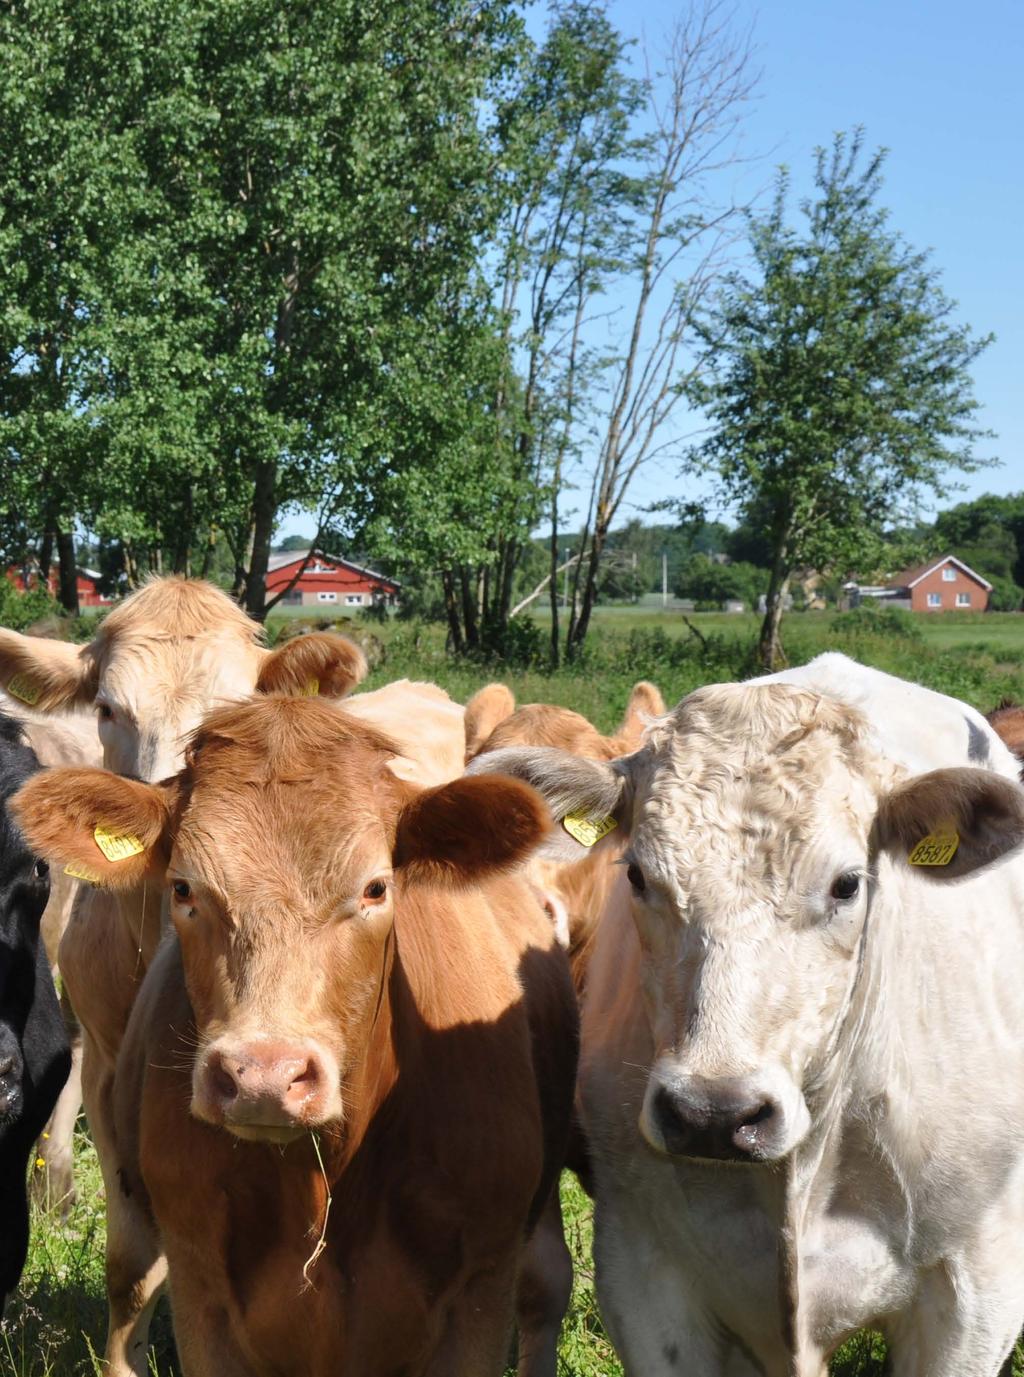 Efterfrågedriven innovation för högre kvalitet på nöt- och lammkött Ett treårigt EU-finansierat projekt med målsättning att skapa bättre förutsättningar för nöt- och lammköttsproducenter i regionen